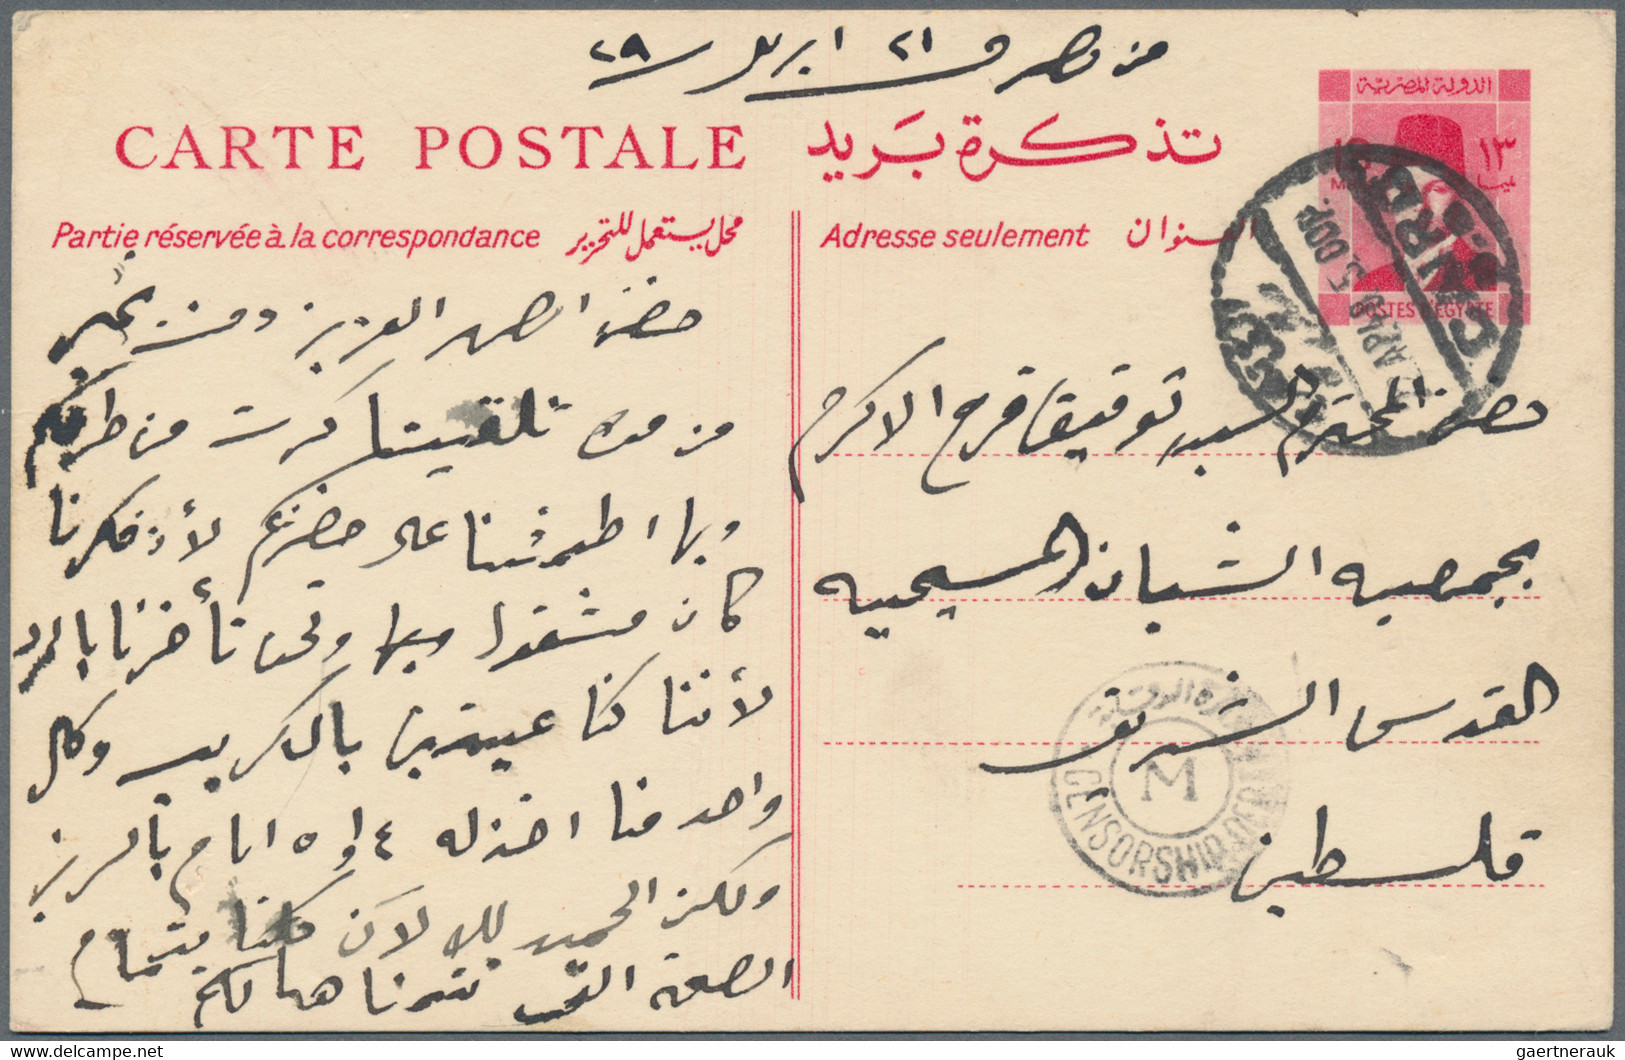 Egypt - postal stationery: 1879-modern: About 480 postal stationery items, mint